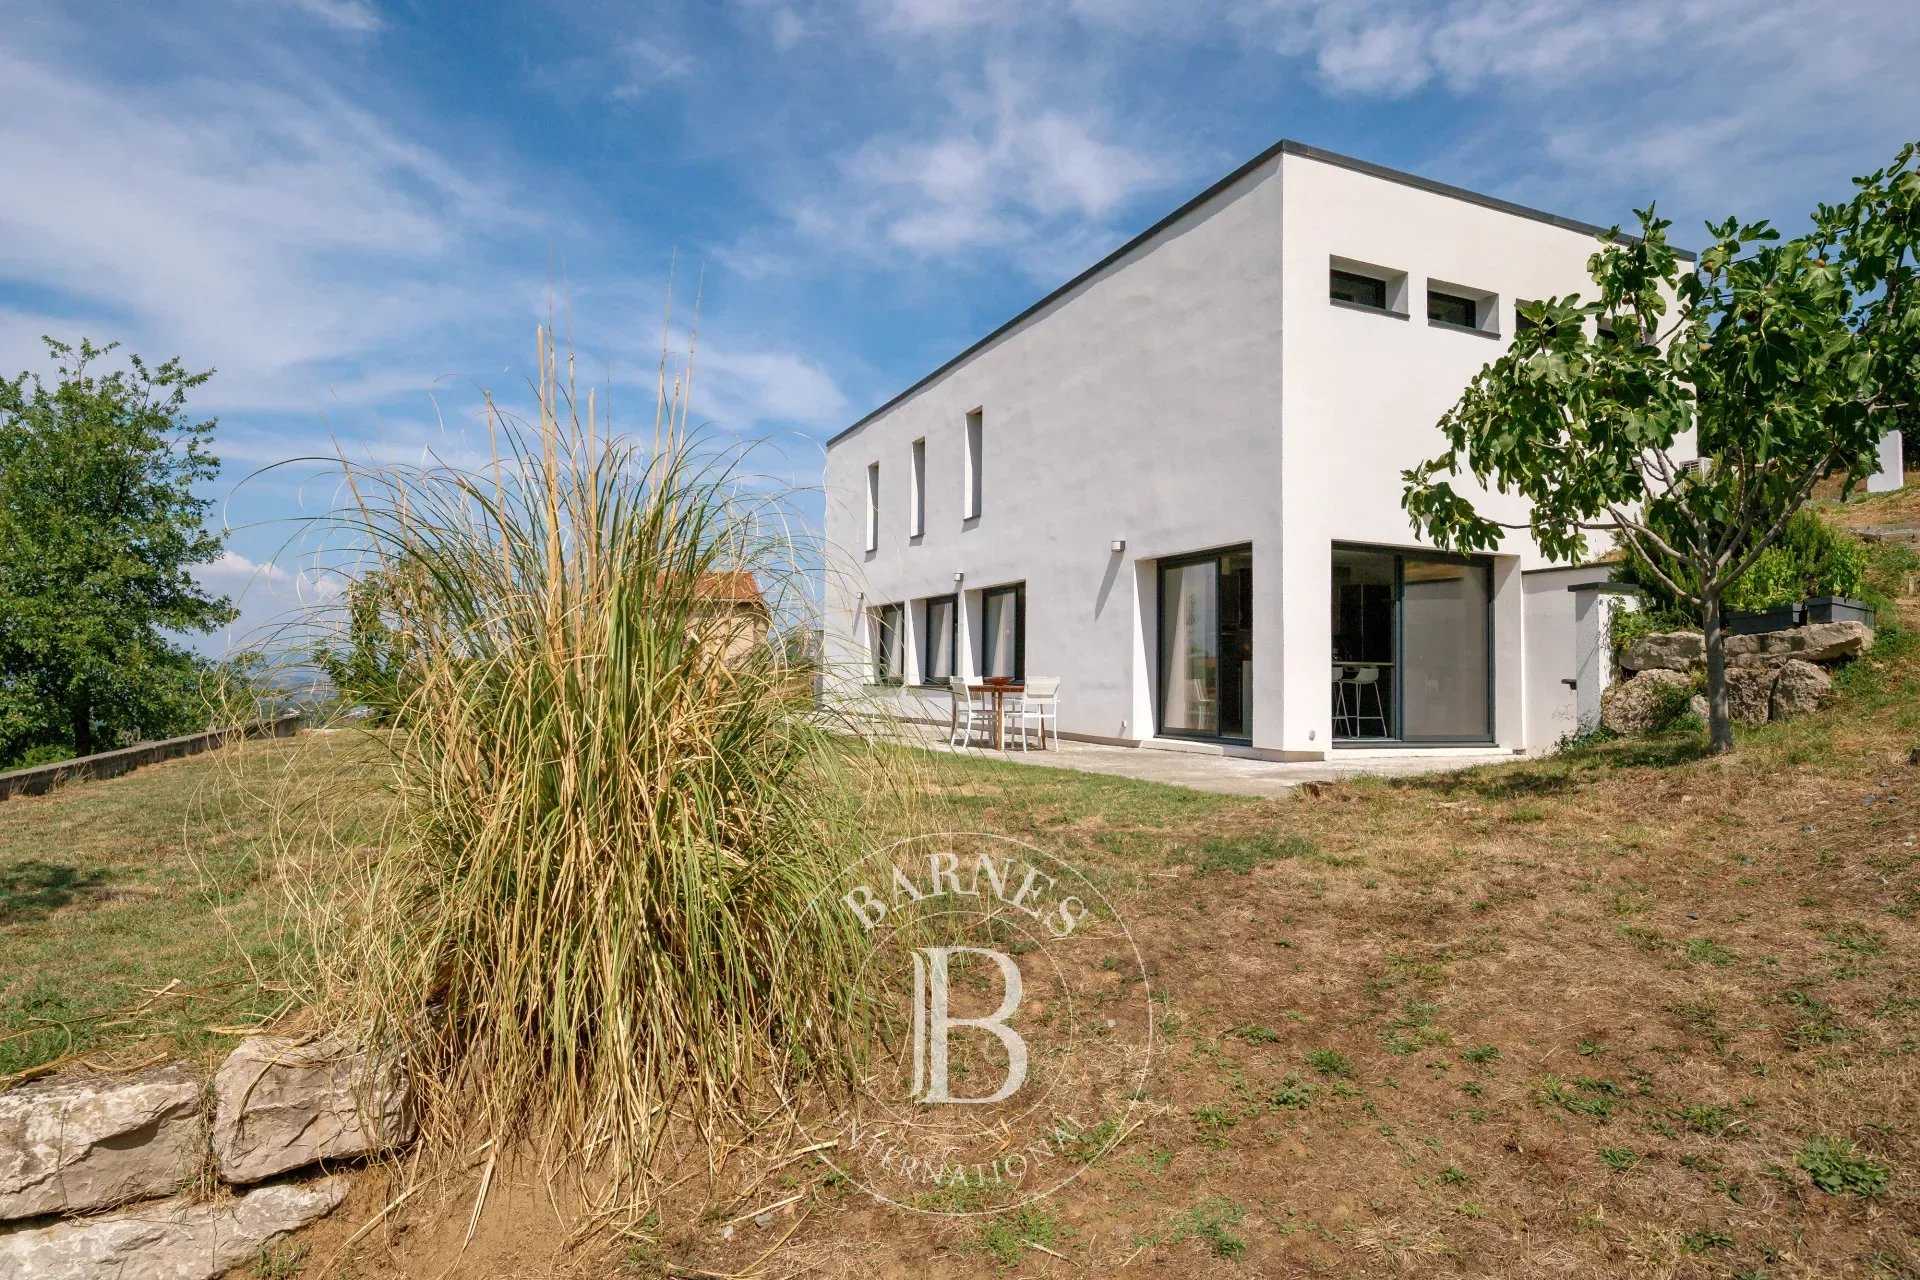 Chevinay - Maison d'architecte d'environ 190 m² - Terrain de 1207 m² - Garage double - 3 Chambres